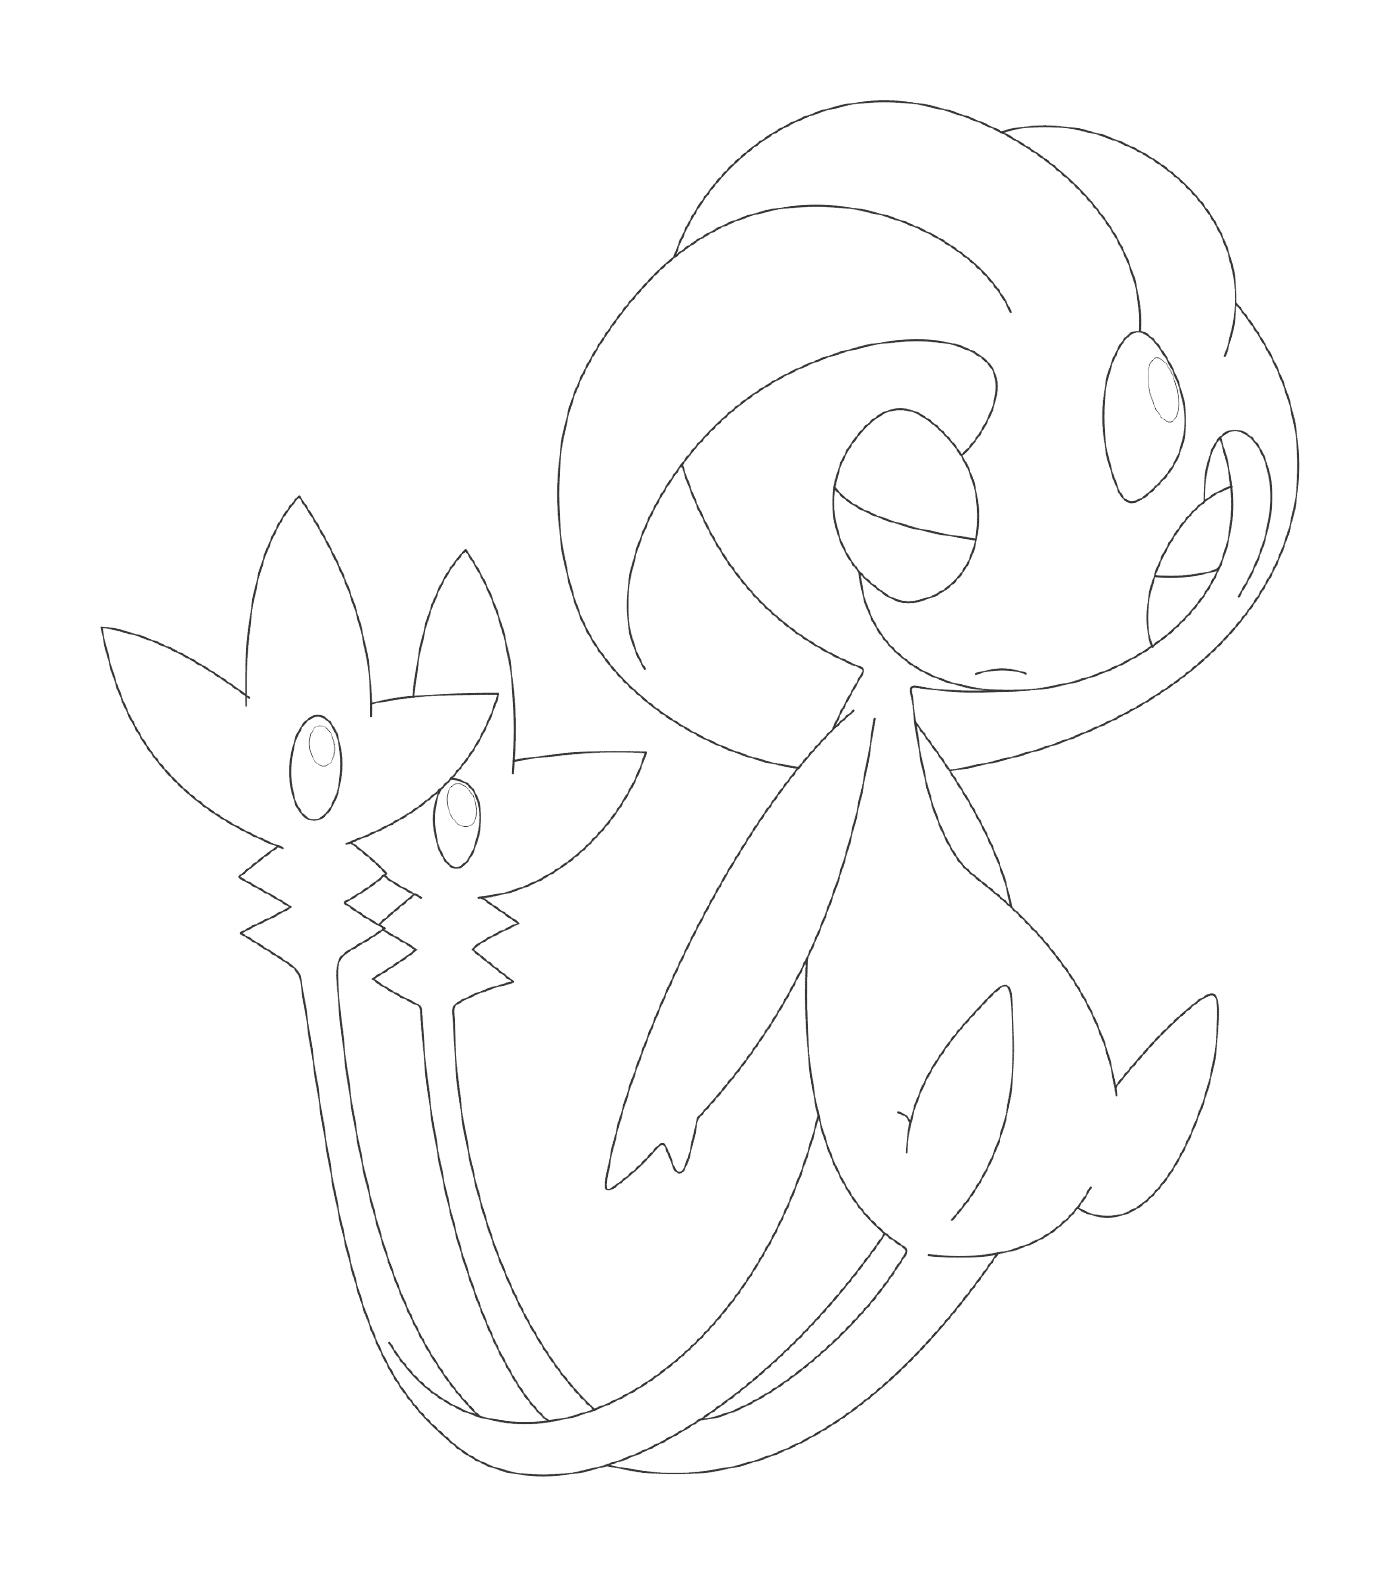  Uxie Pokémon geheimnisvolle Zeichnung 